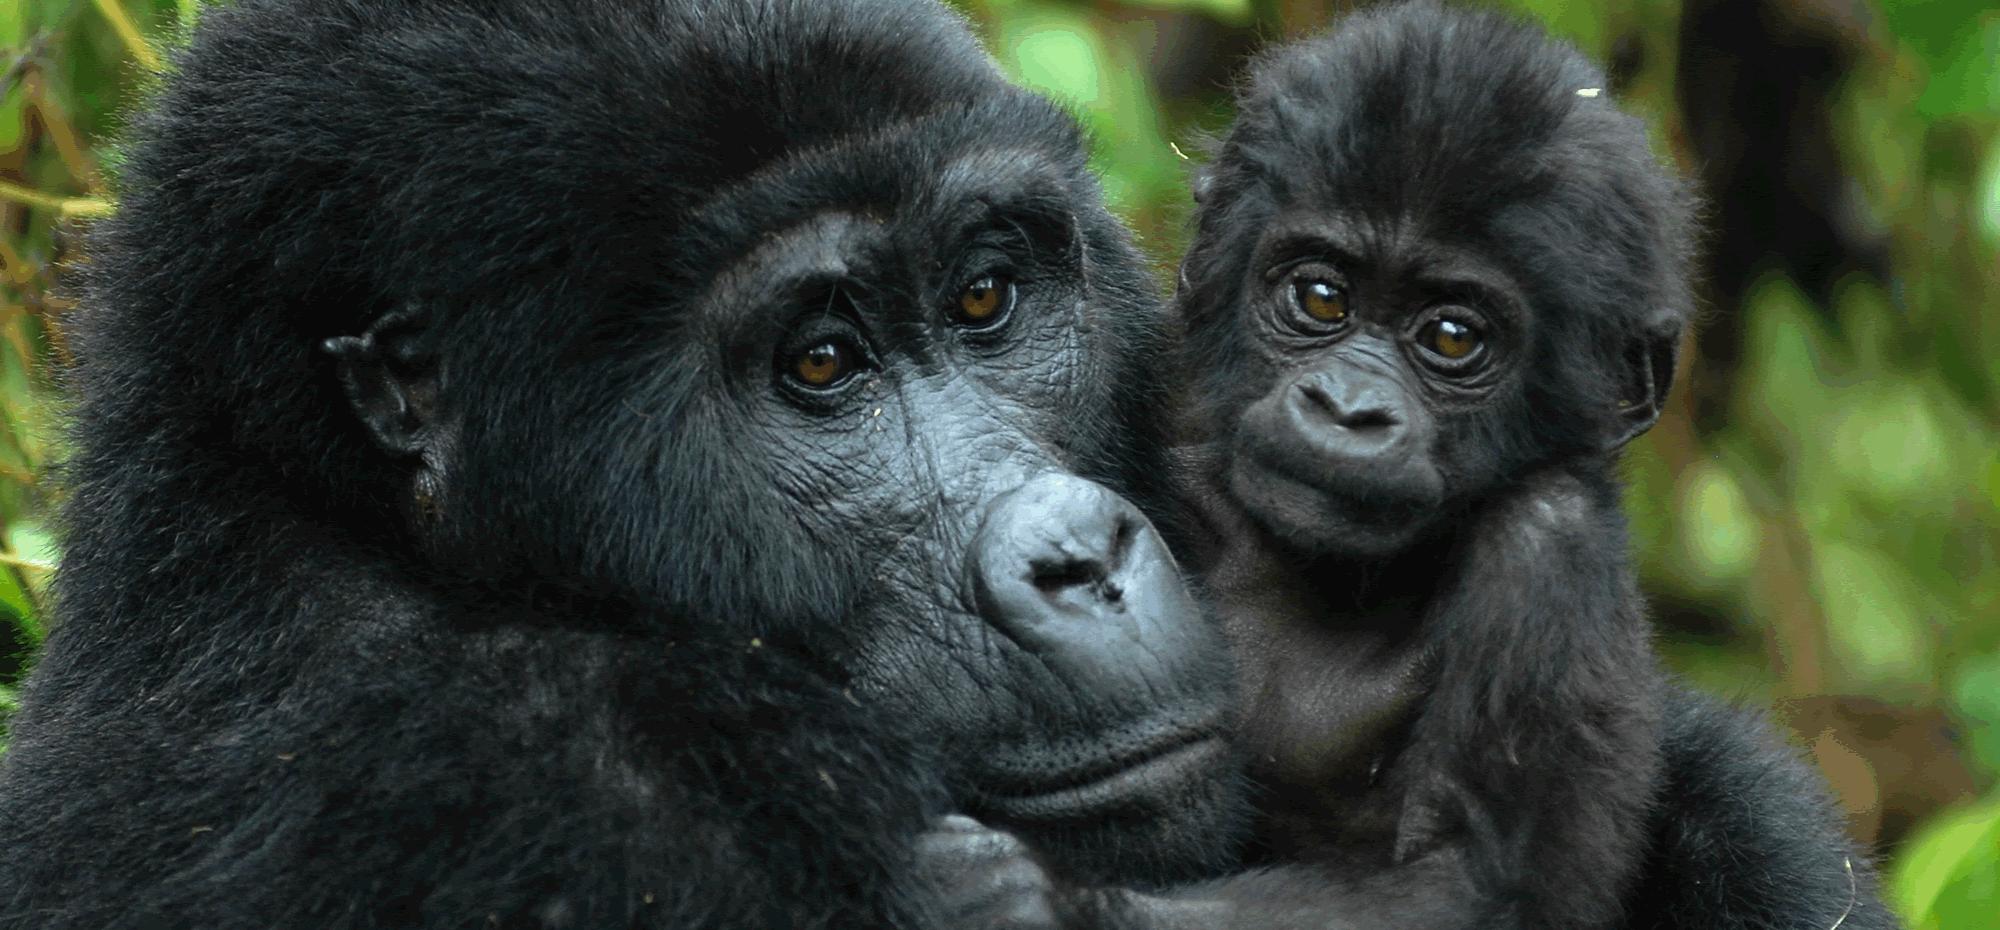 1 day Rwanda Gorilla trekking safari 